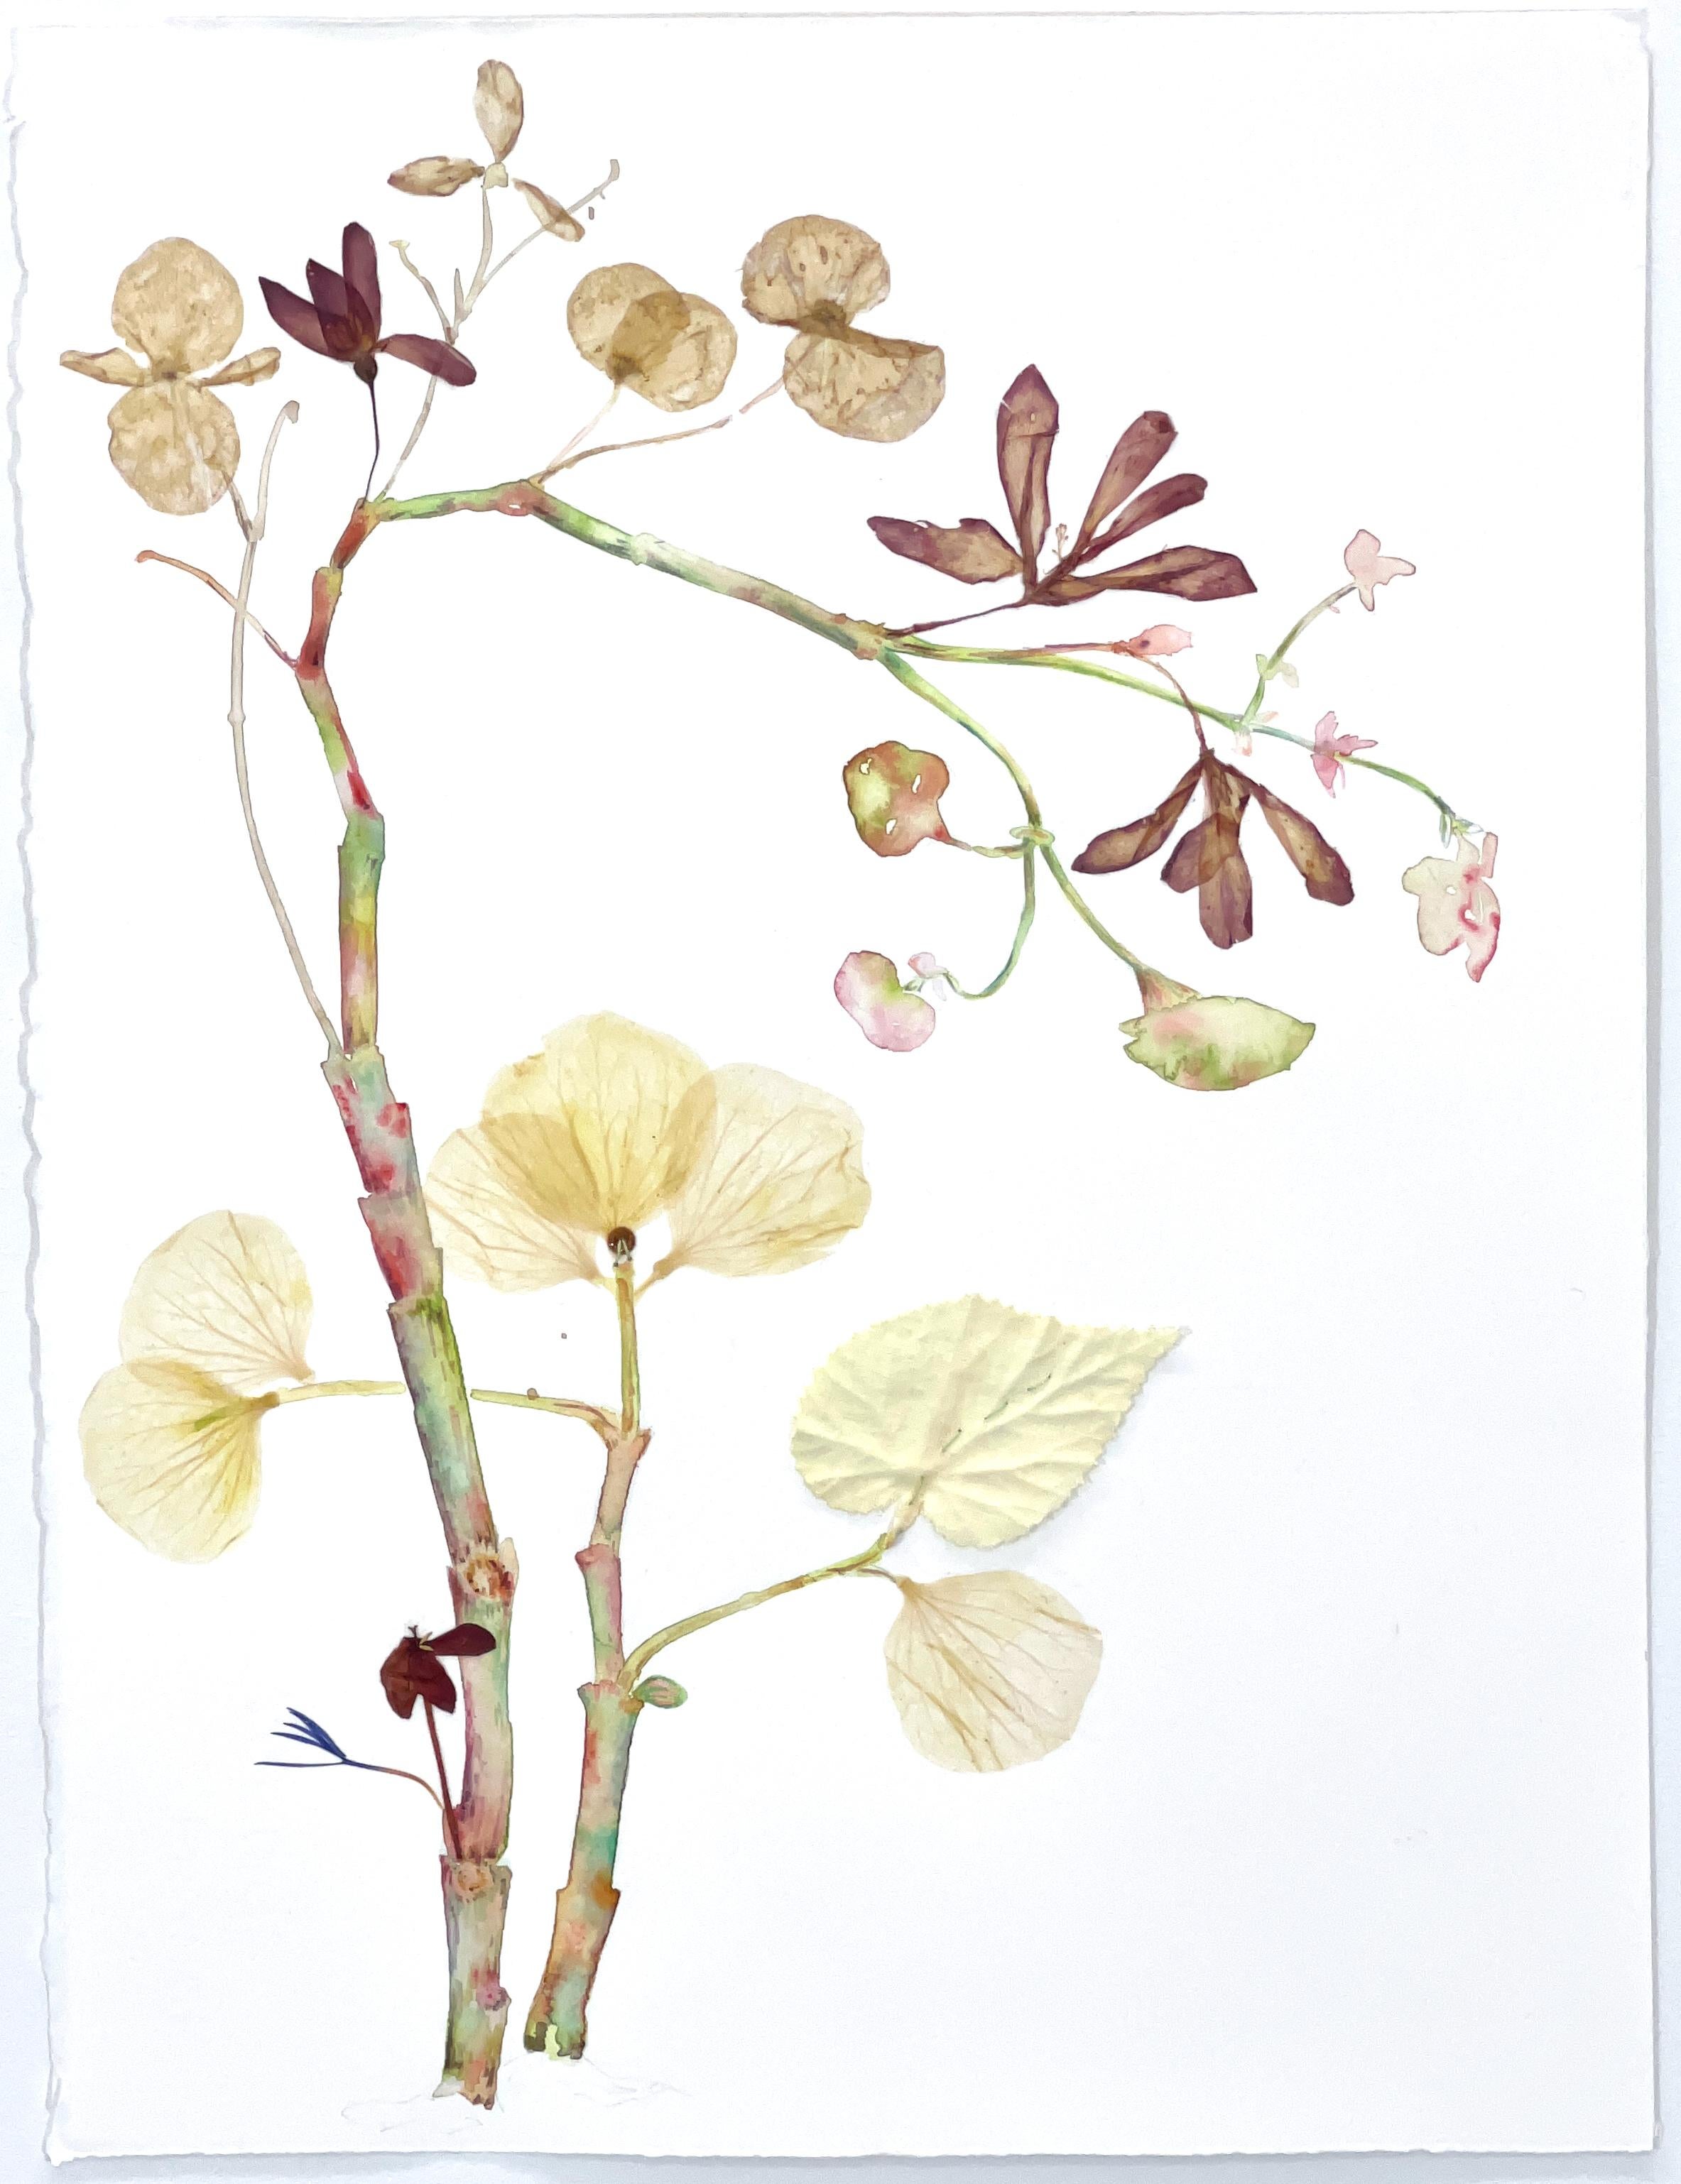 Marilla Palmer "Flowers Like fans" (Fleurs comme fans) - Aquarelle et fleurs pressées sur papier